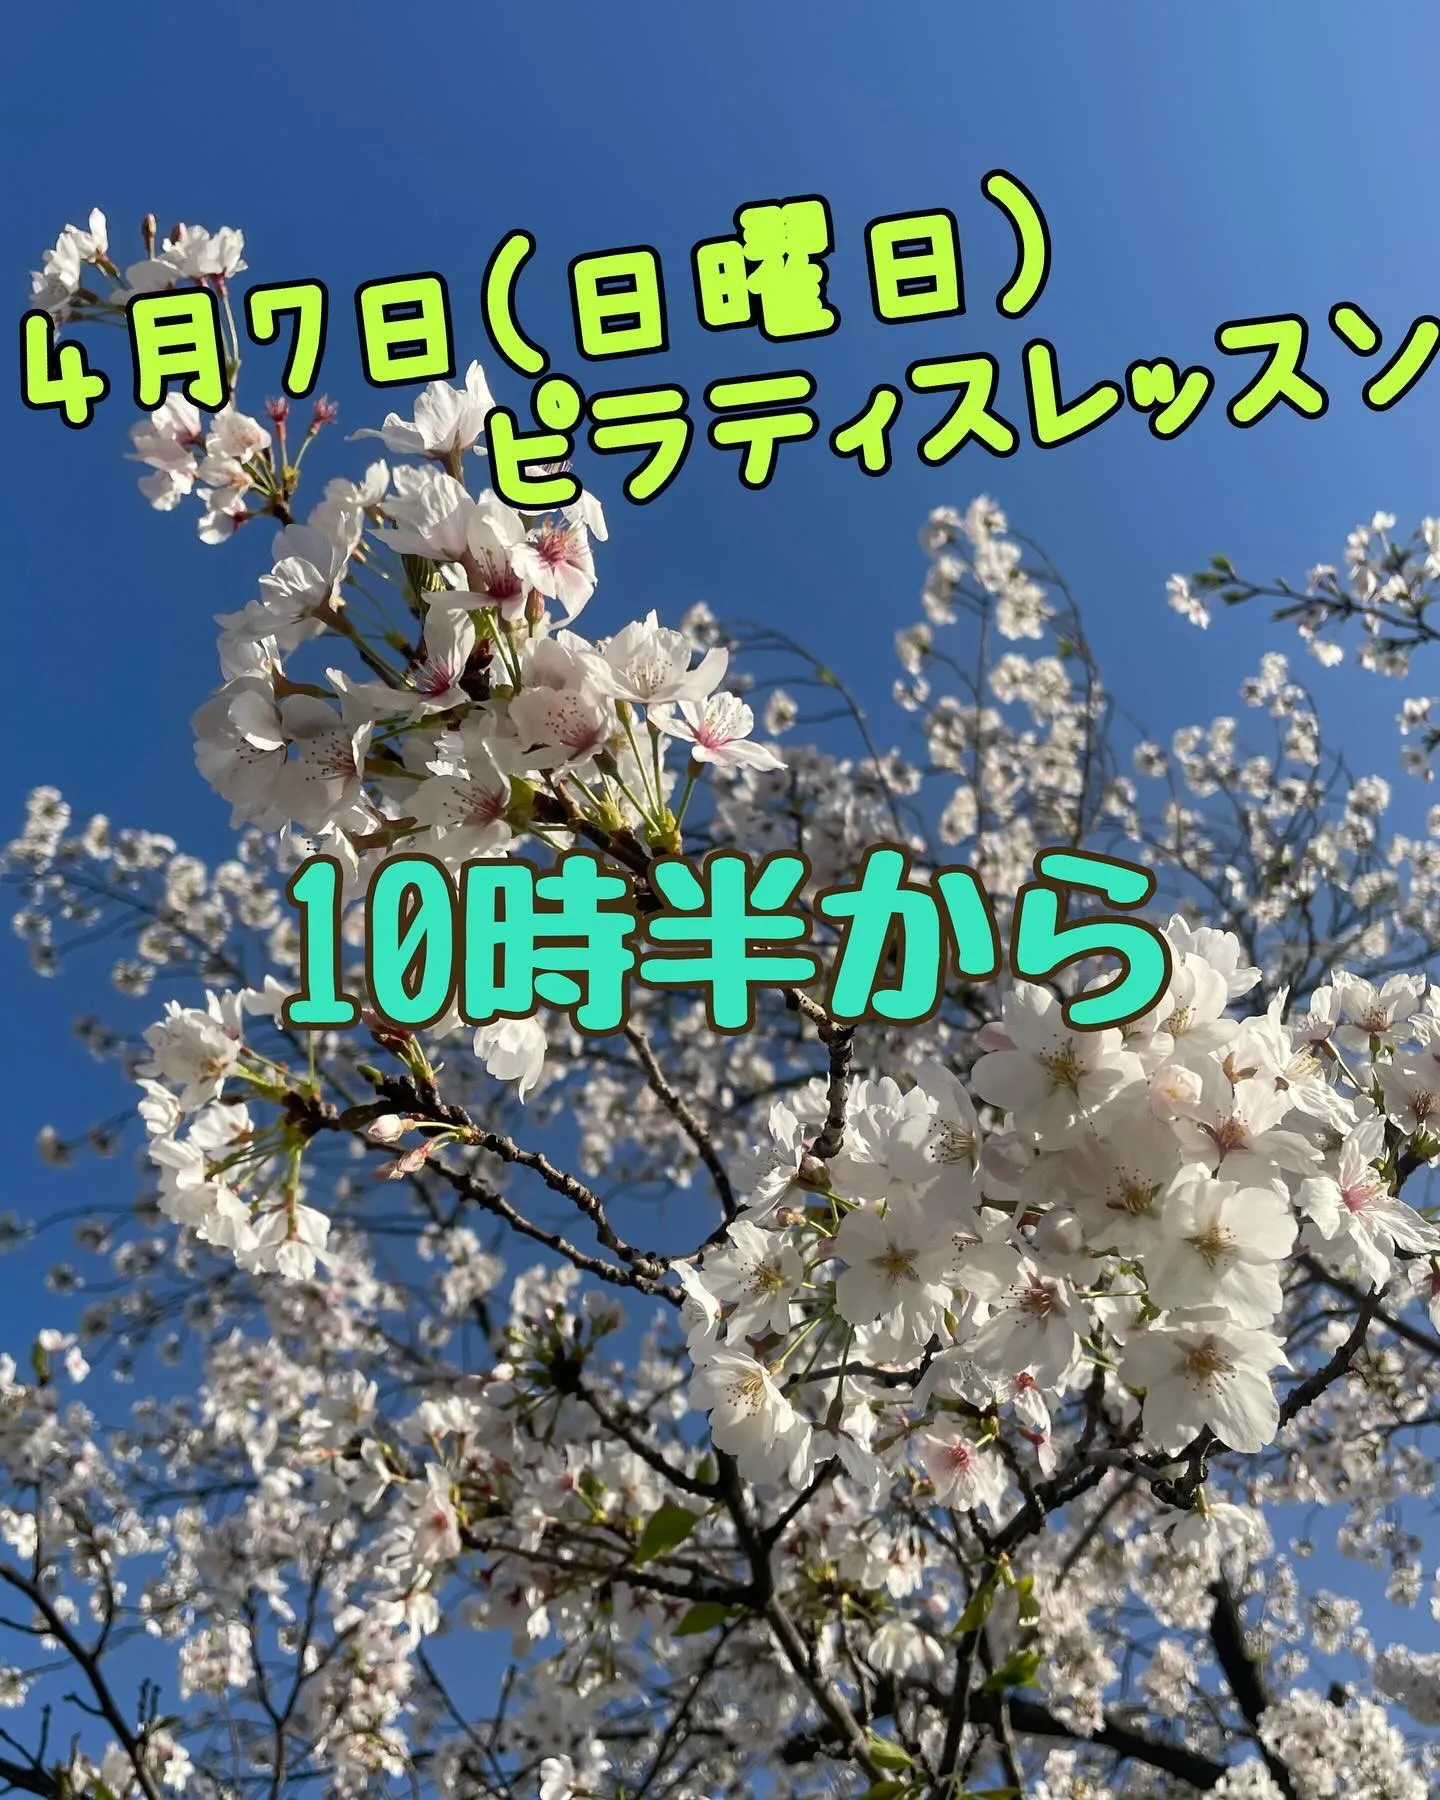 4月7日(日曜日)ヨガ→ピラティス